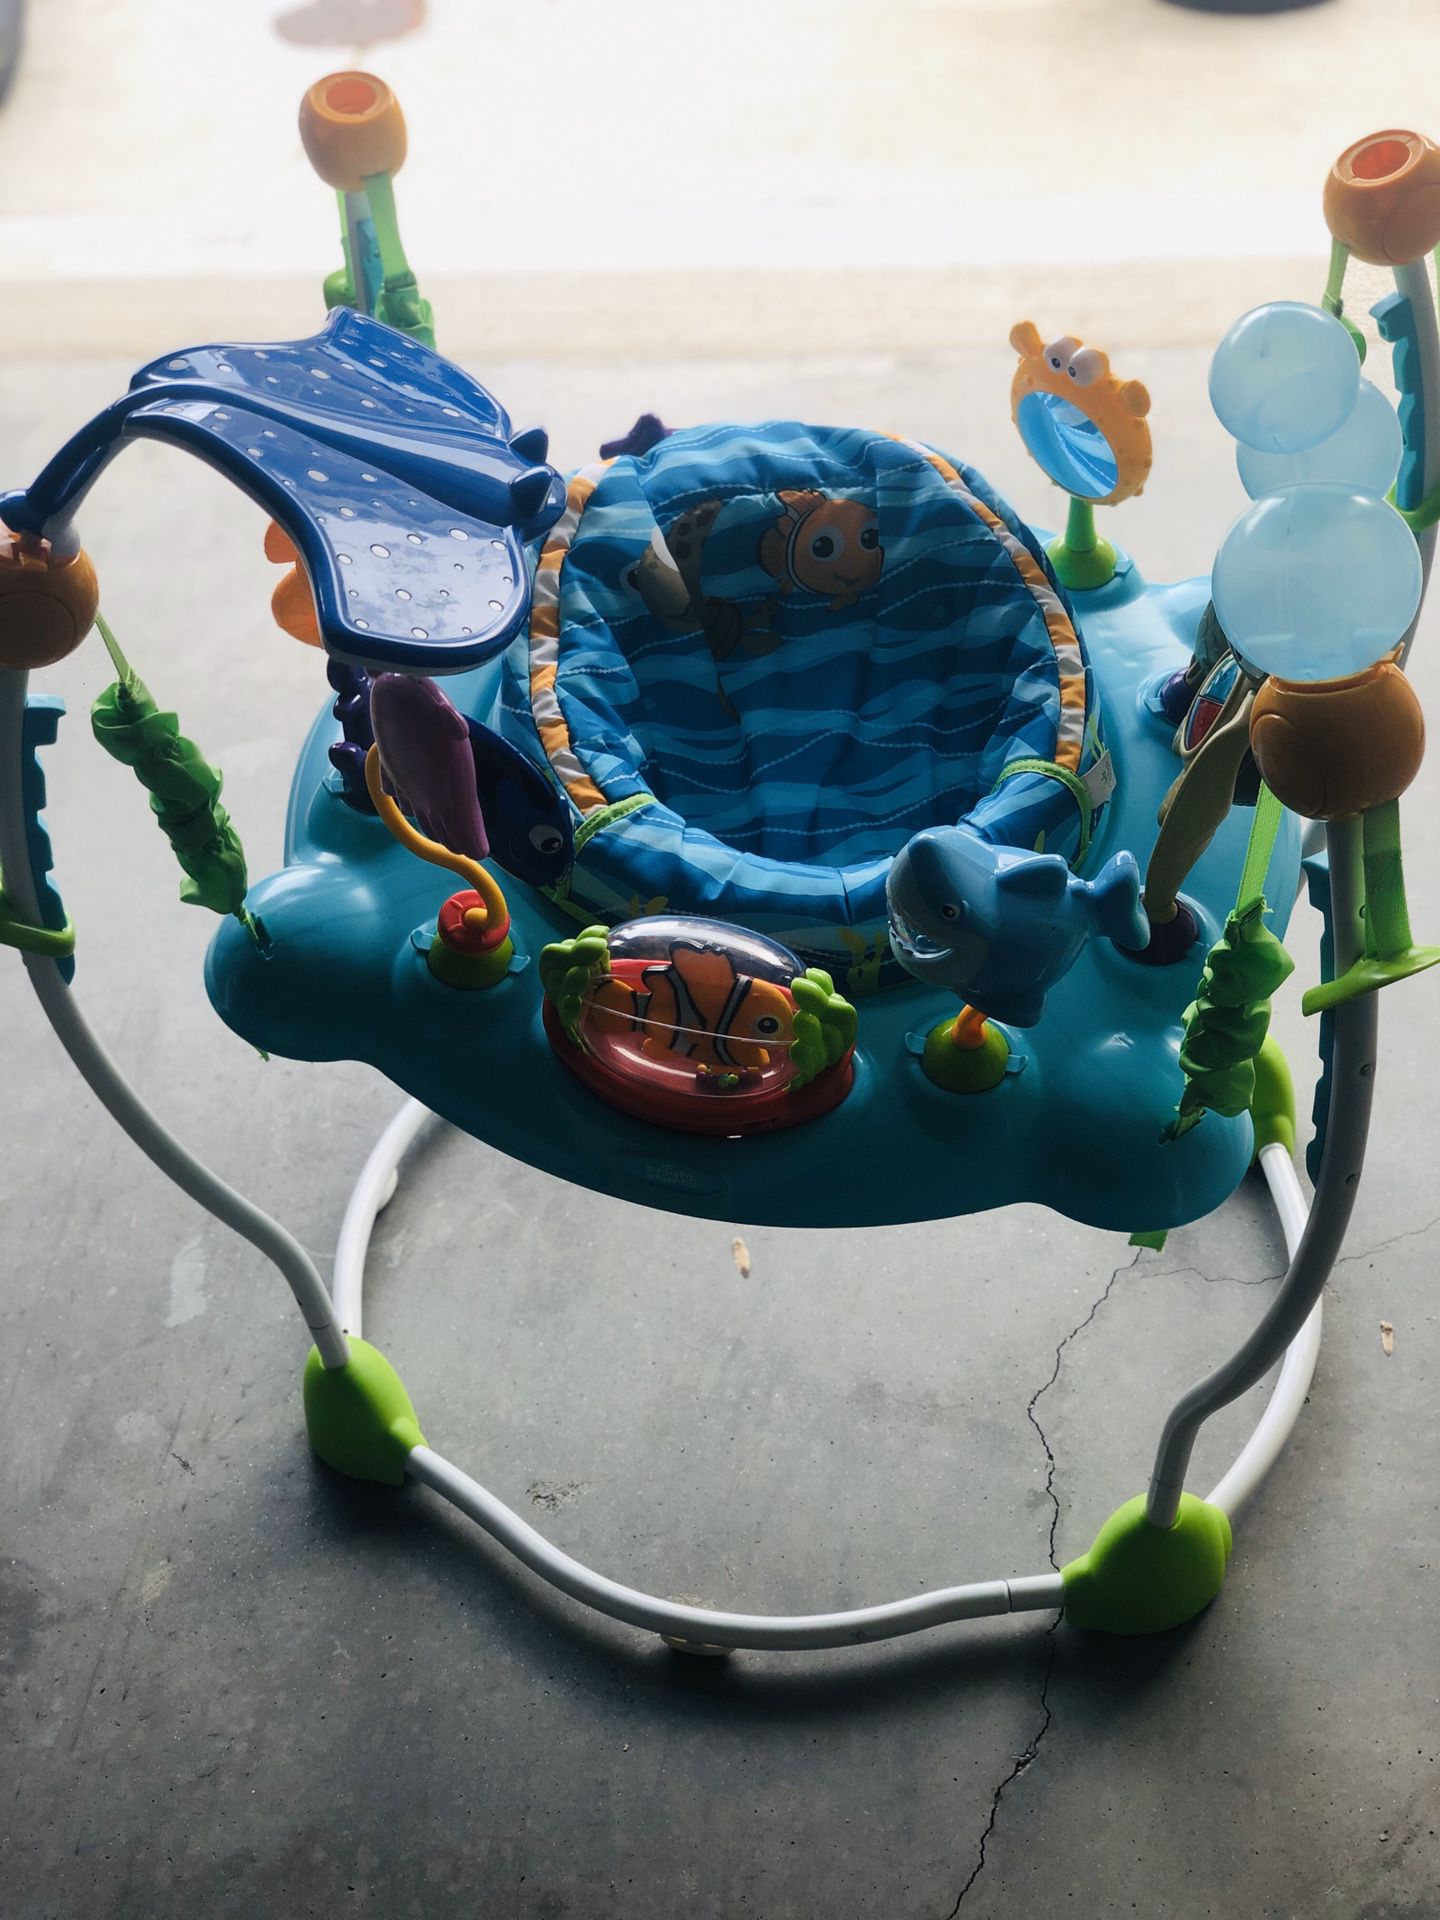 Finding Nemo Sea of Activities Baby Jumper